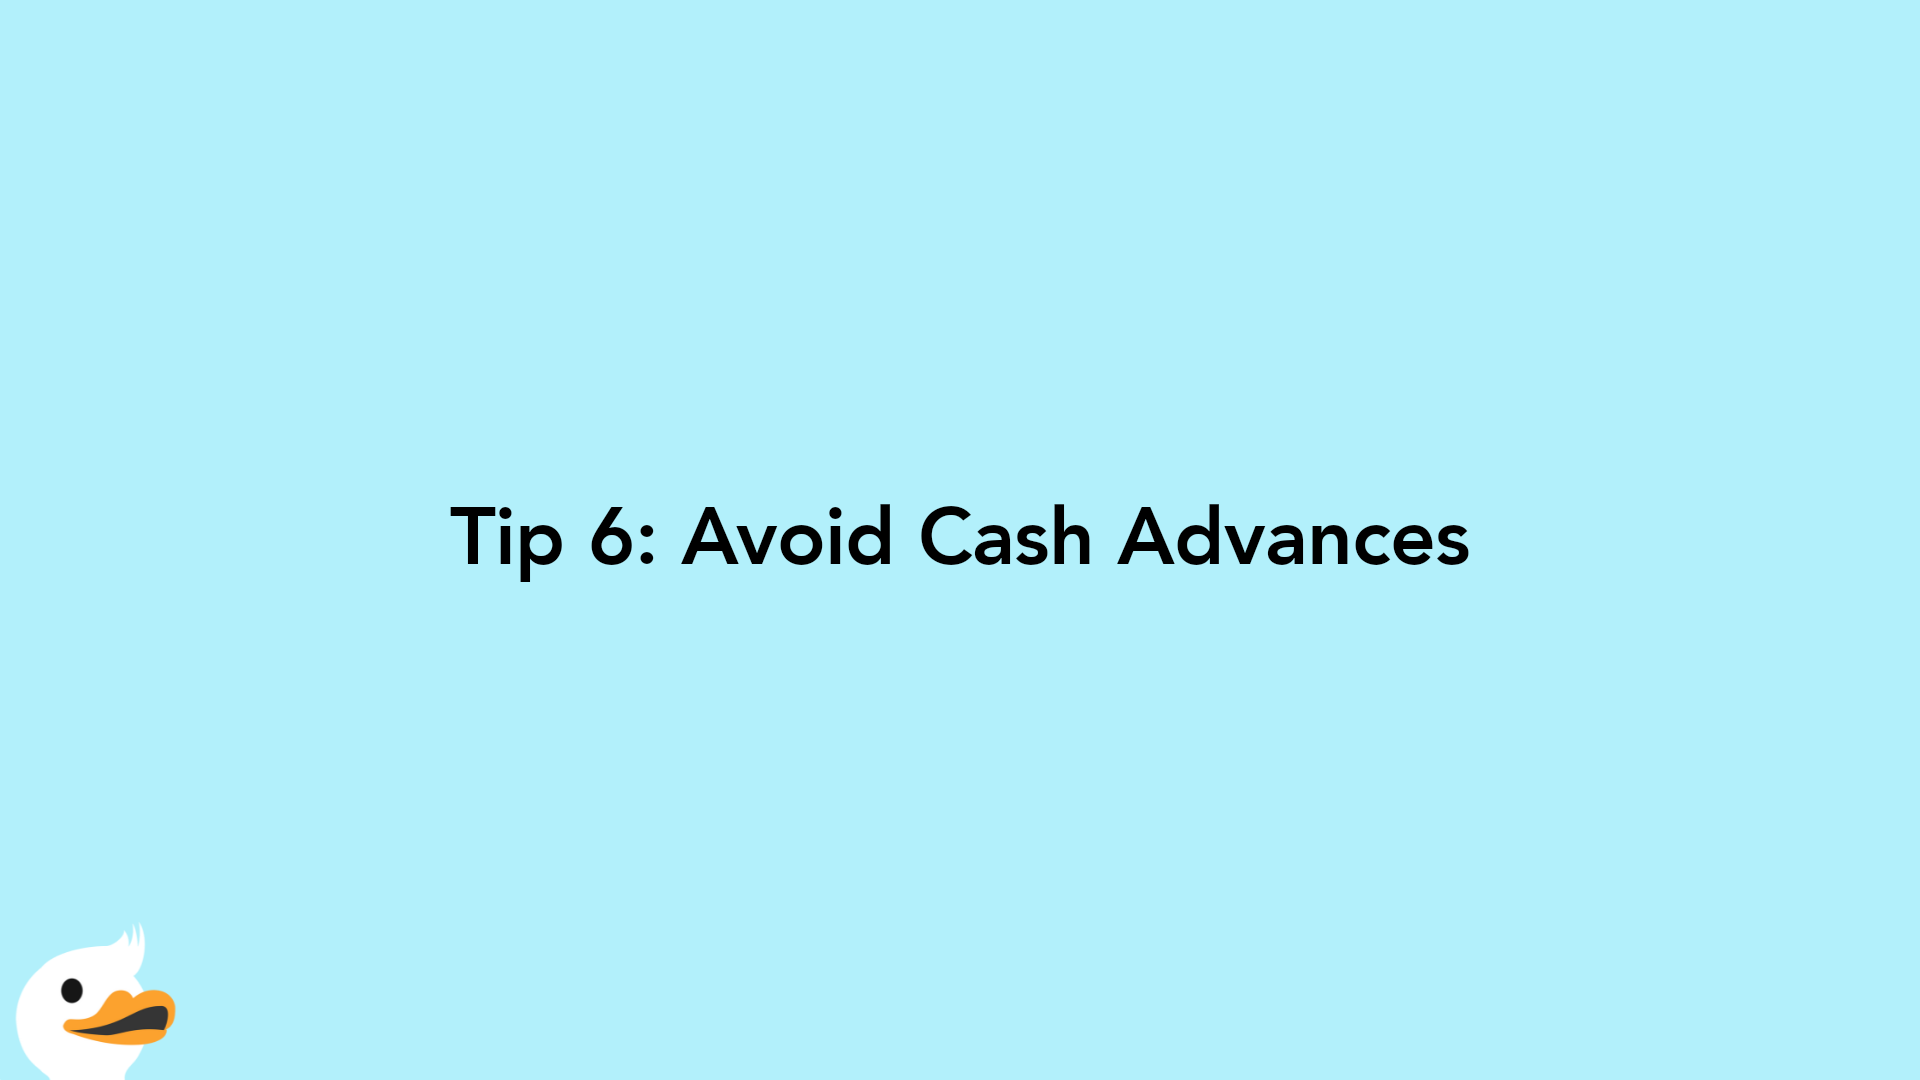 Tip 6: Avoid Cash Advances